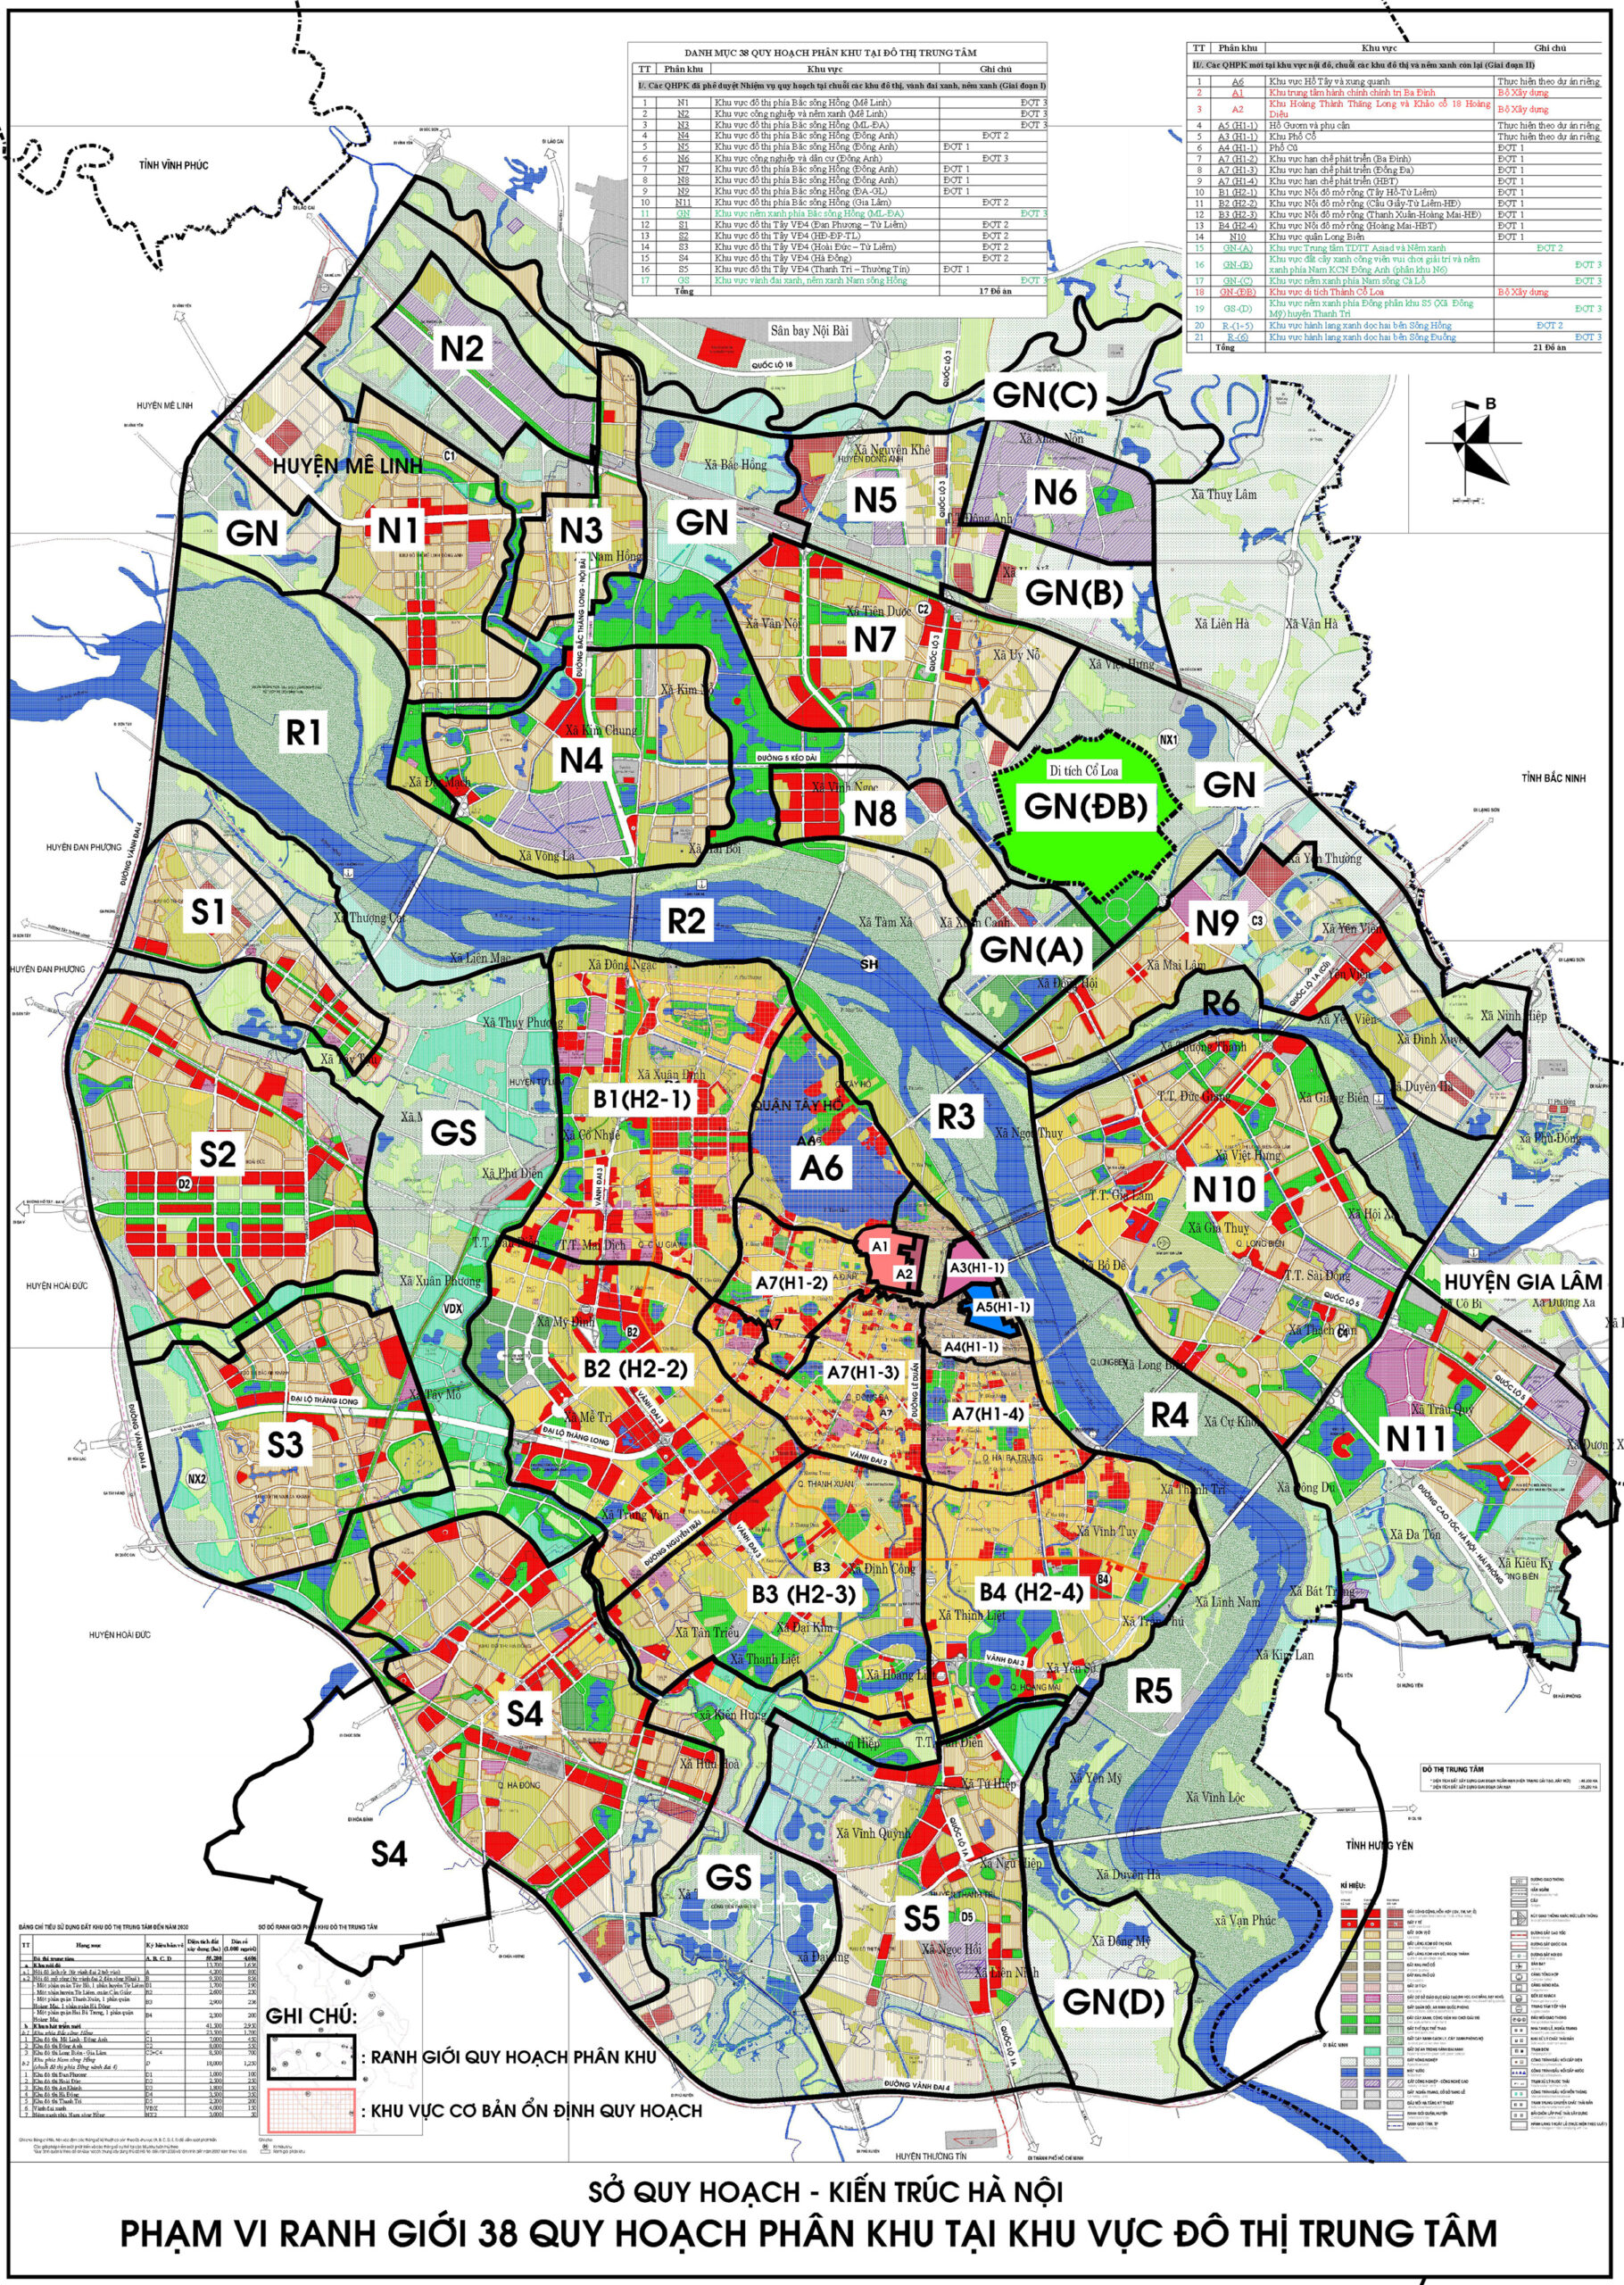 Bản đồ quy hoạch Hà Nội 2024 giúp bạn dễ dàng tìm hiểu về các khu vực đang được phát triển, những dự án mới và cơ hội đầu tư tiềm năng. Xem bản đồ để khám phá vẻ đẹp của Hà Nội trong tương lai.